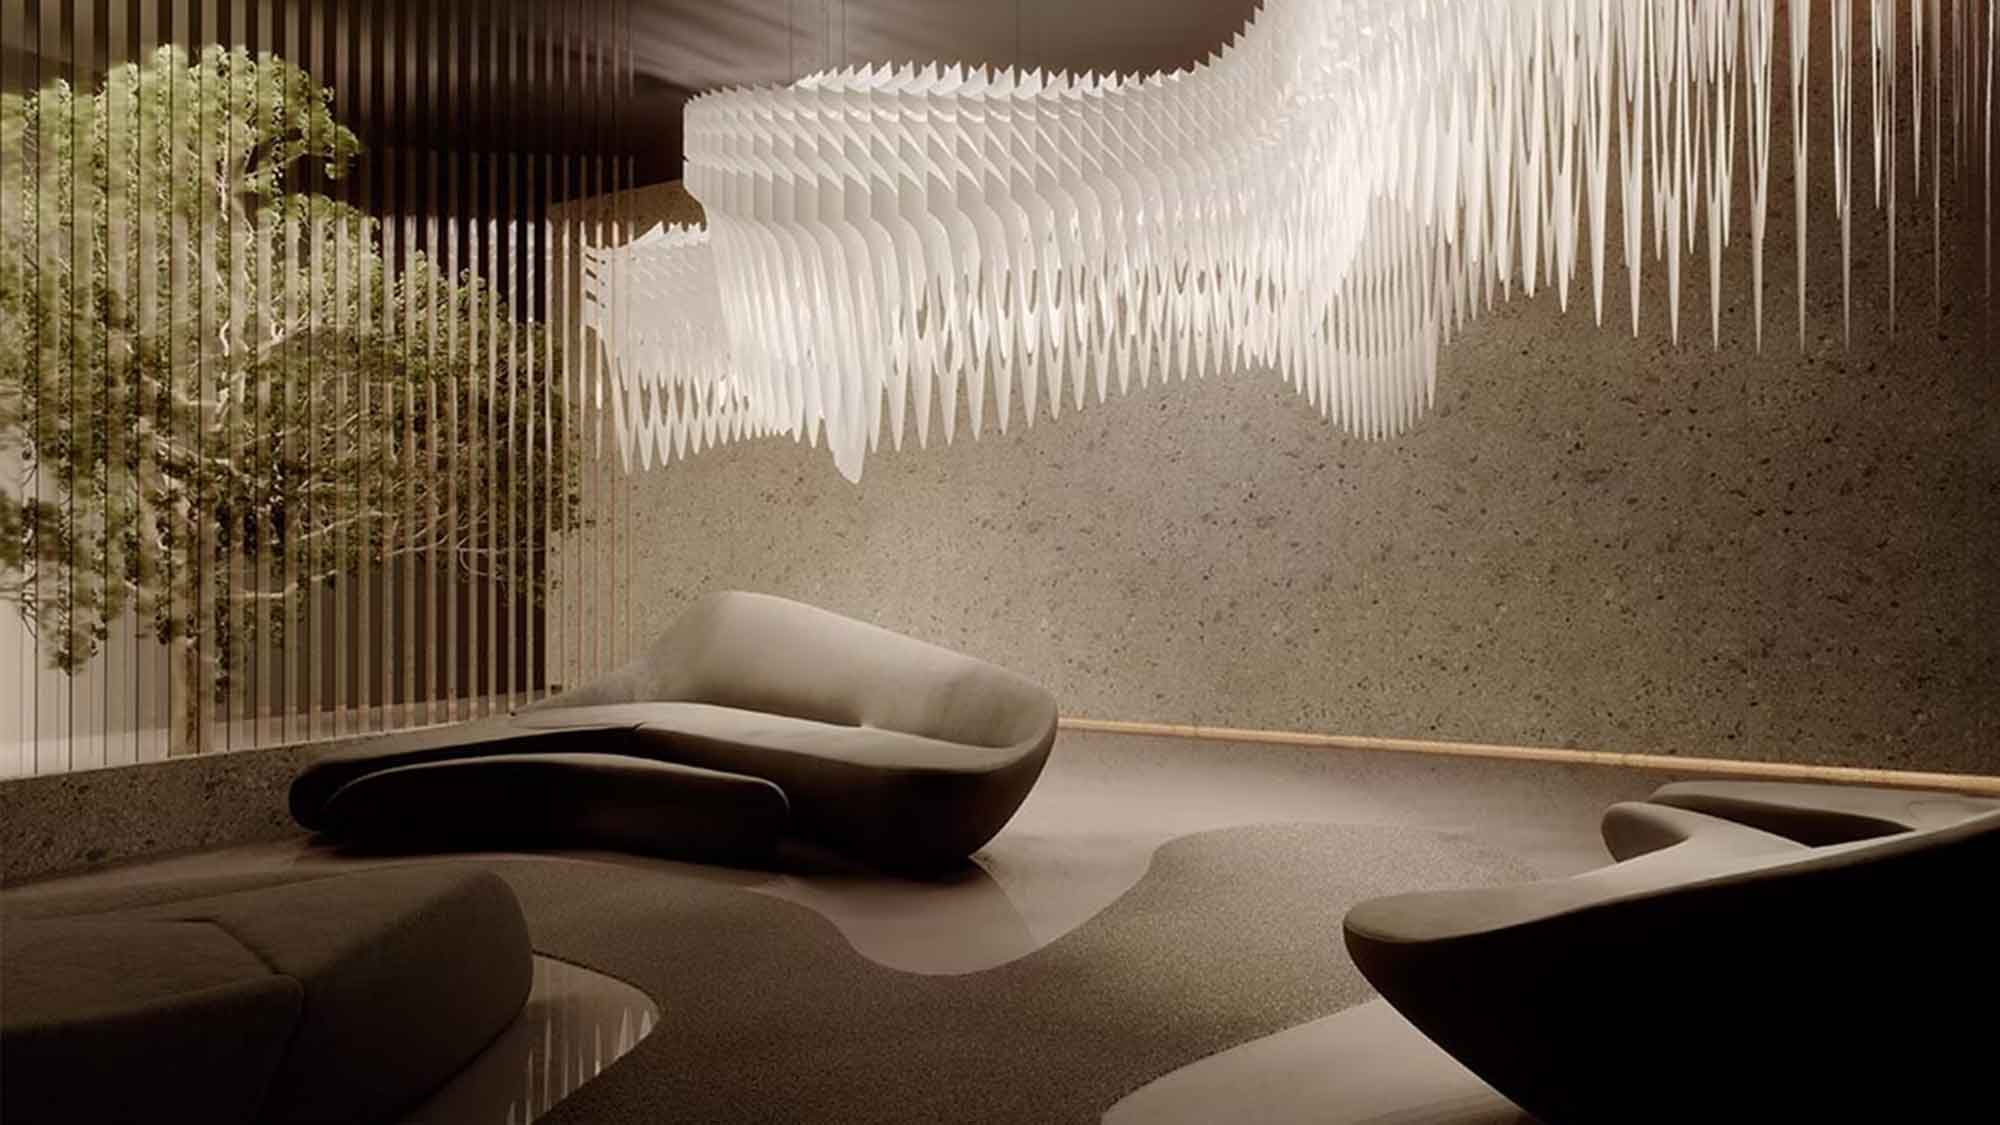 Anzeige: Design Idee Gütersloh: strahlende Kunst – die Magie der Lichtgestaltung für Ihr Zuhause